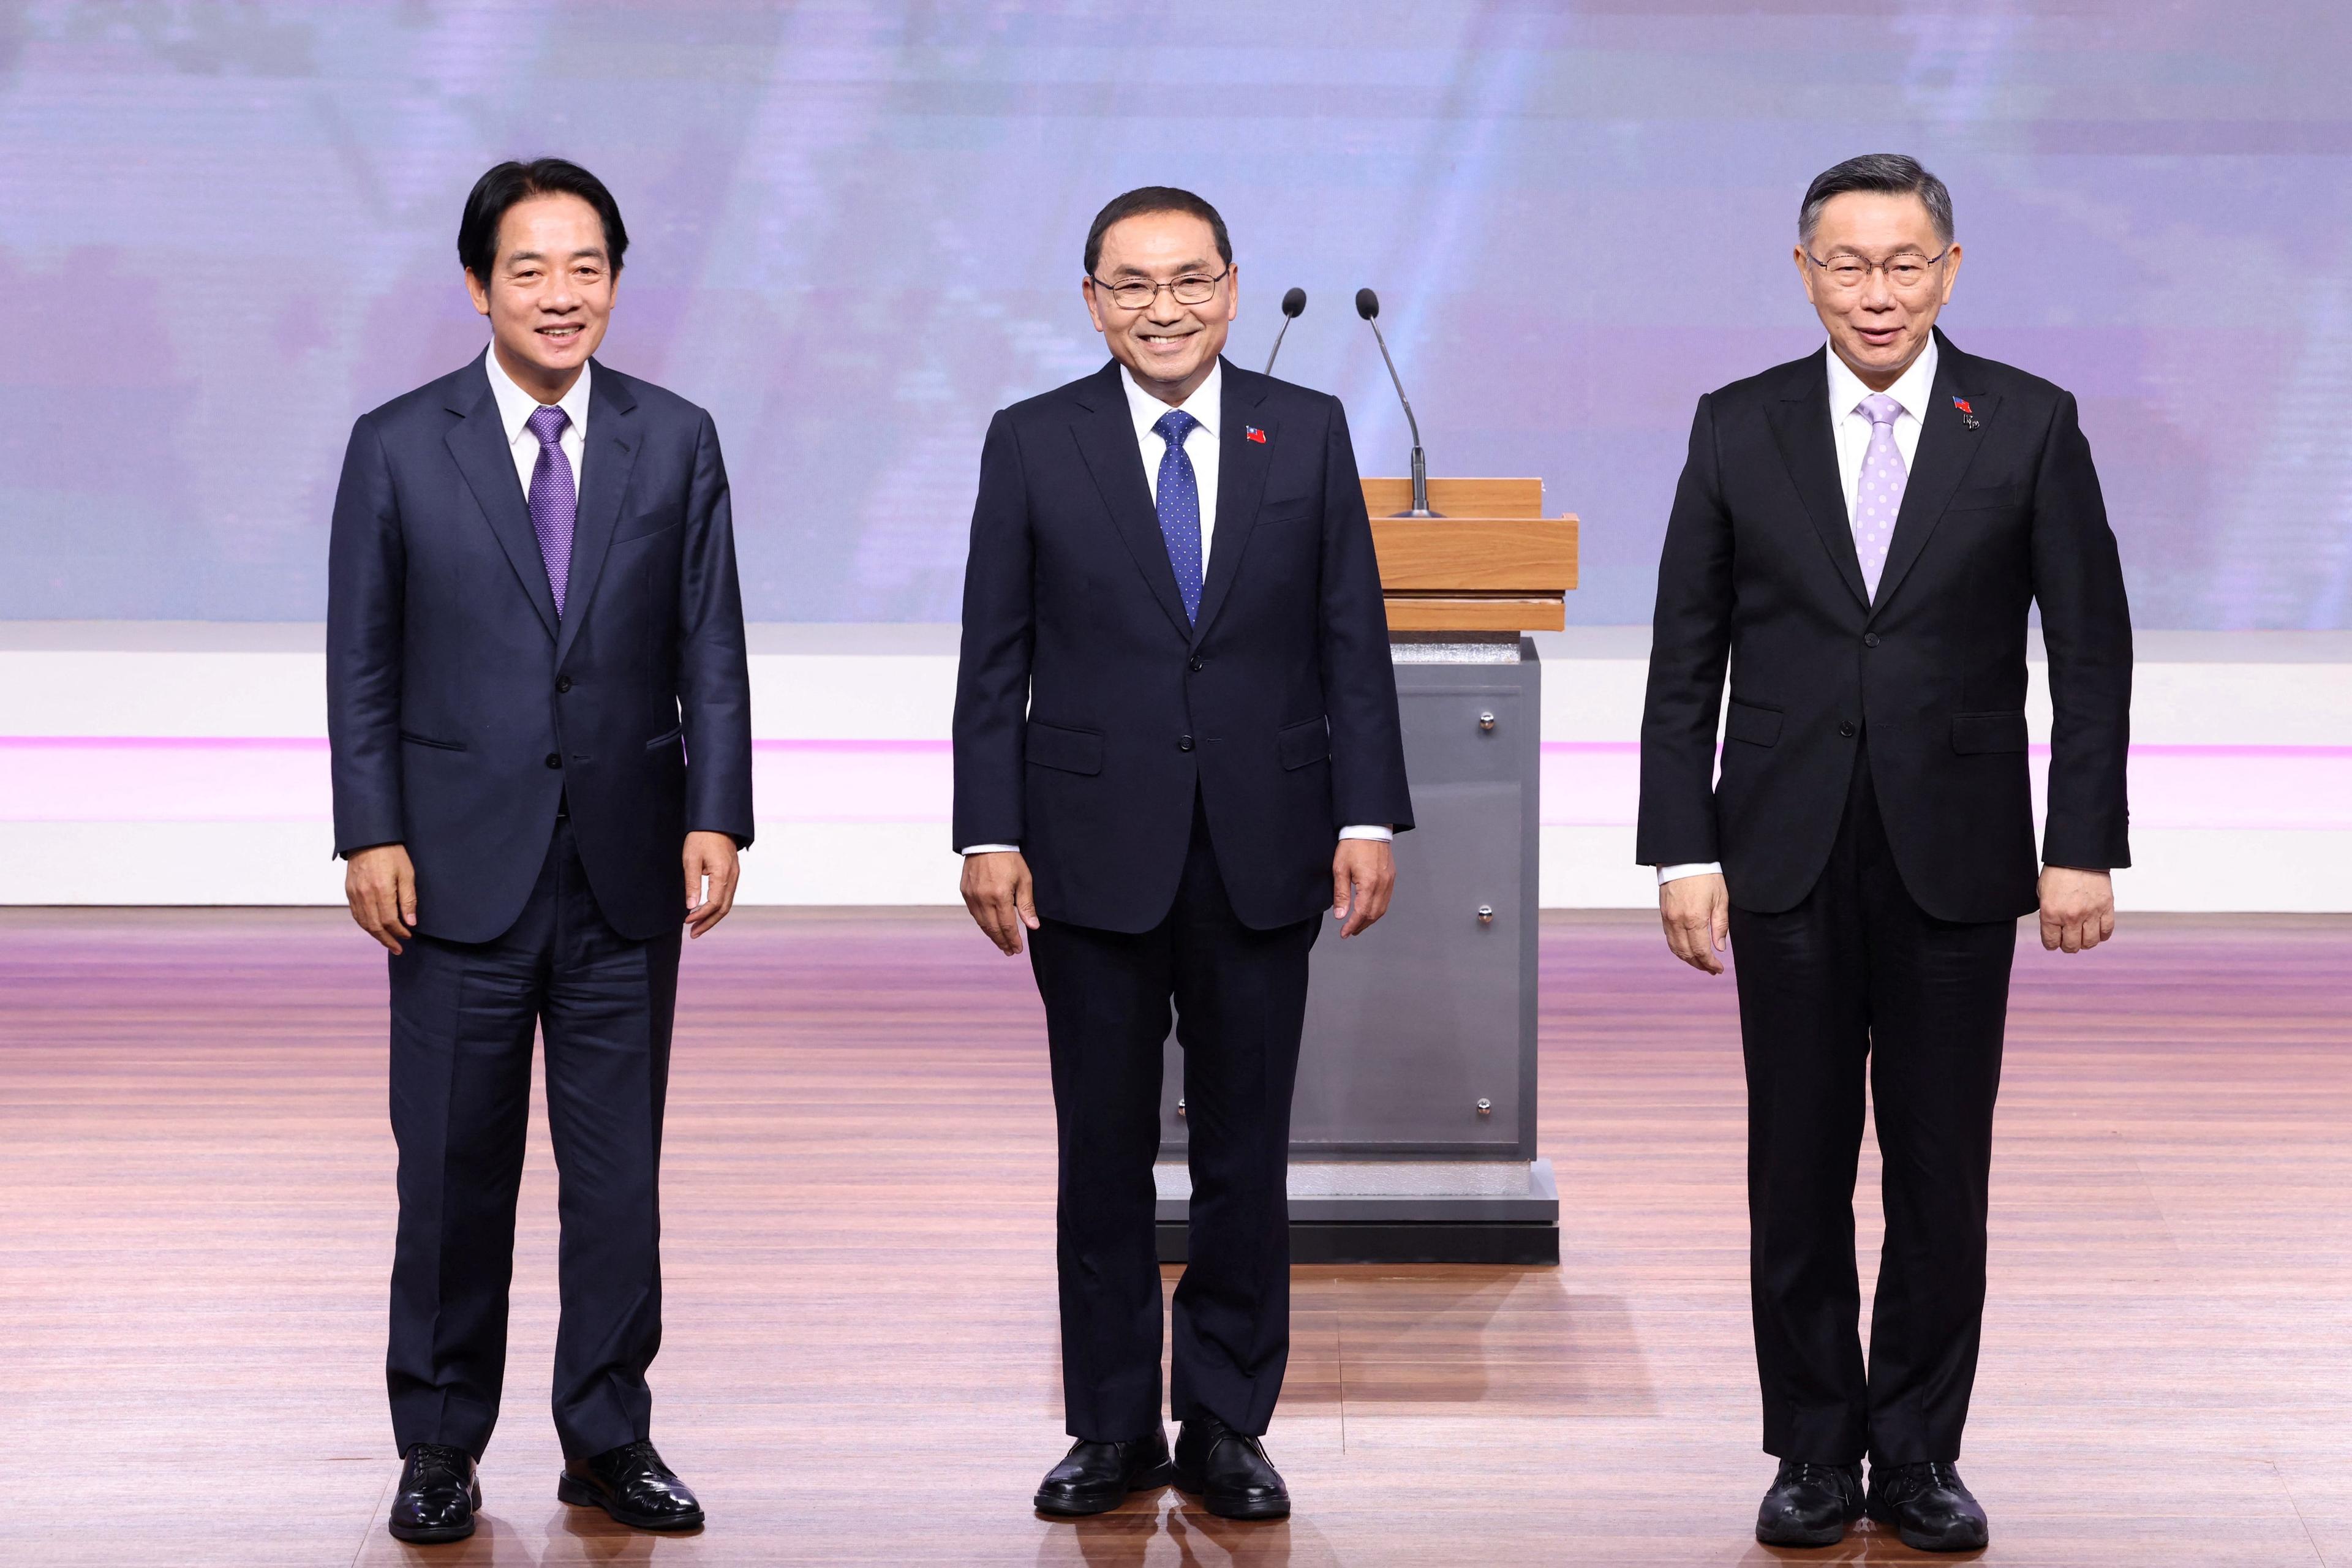 (V–H) Lai Ching-te, presidentkandidat från det regerande Demokratiska progressiva partiet (DPP), Hou Yu-ih, presidentkandidat från huvudoppositionen Kuomintang (KMT), och Ko Wen-je, presidentkandidat från oppositionen Taiwans folkparti (TPP), poserar för en bild under en debatt i Taipei den 30 december 2023. Foto: Pei Chen/Pool/AFP Via Getty Images